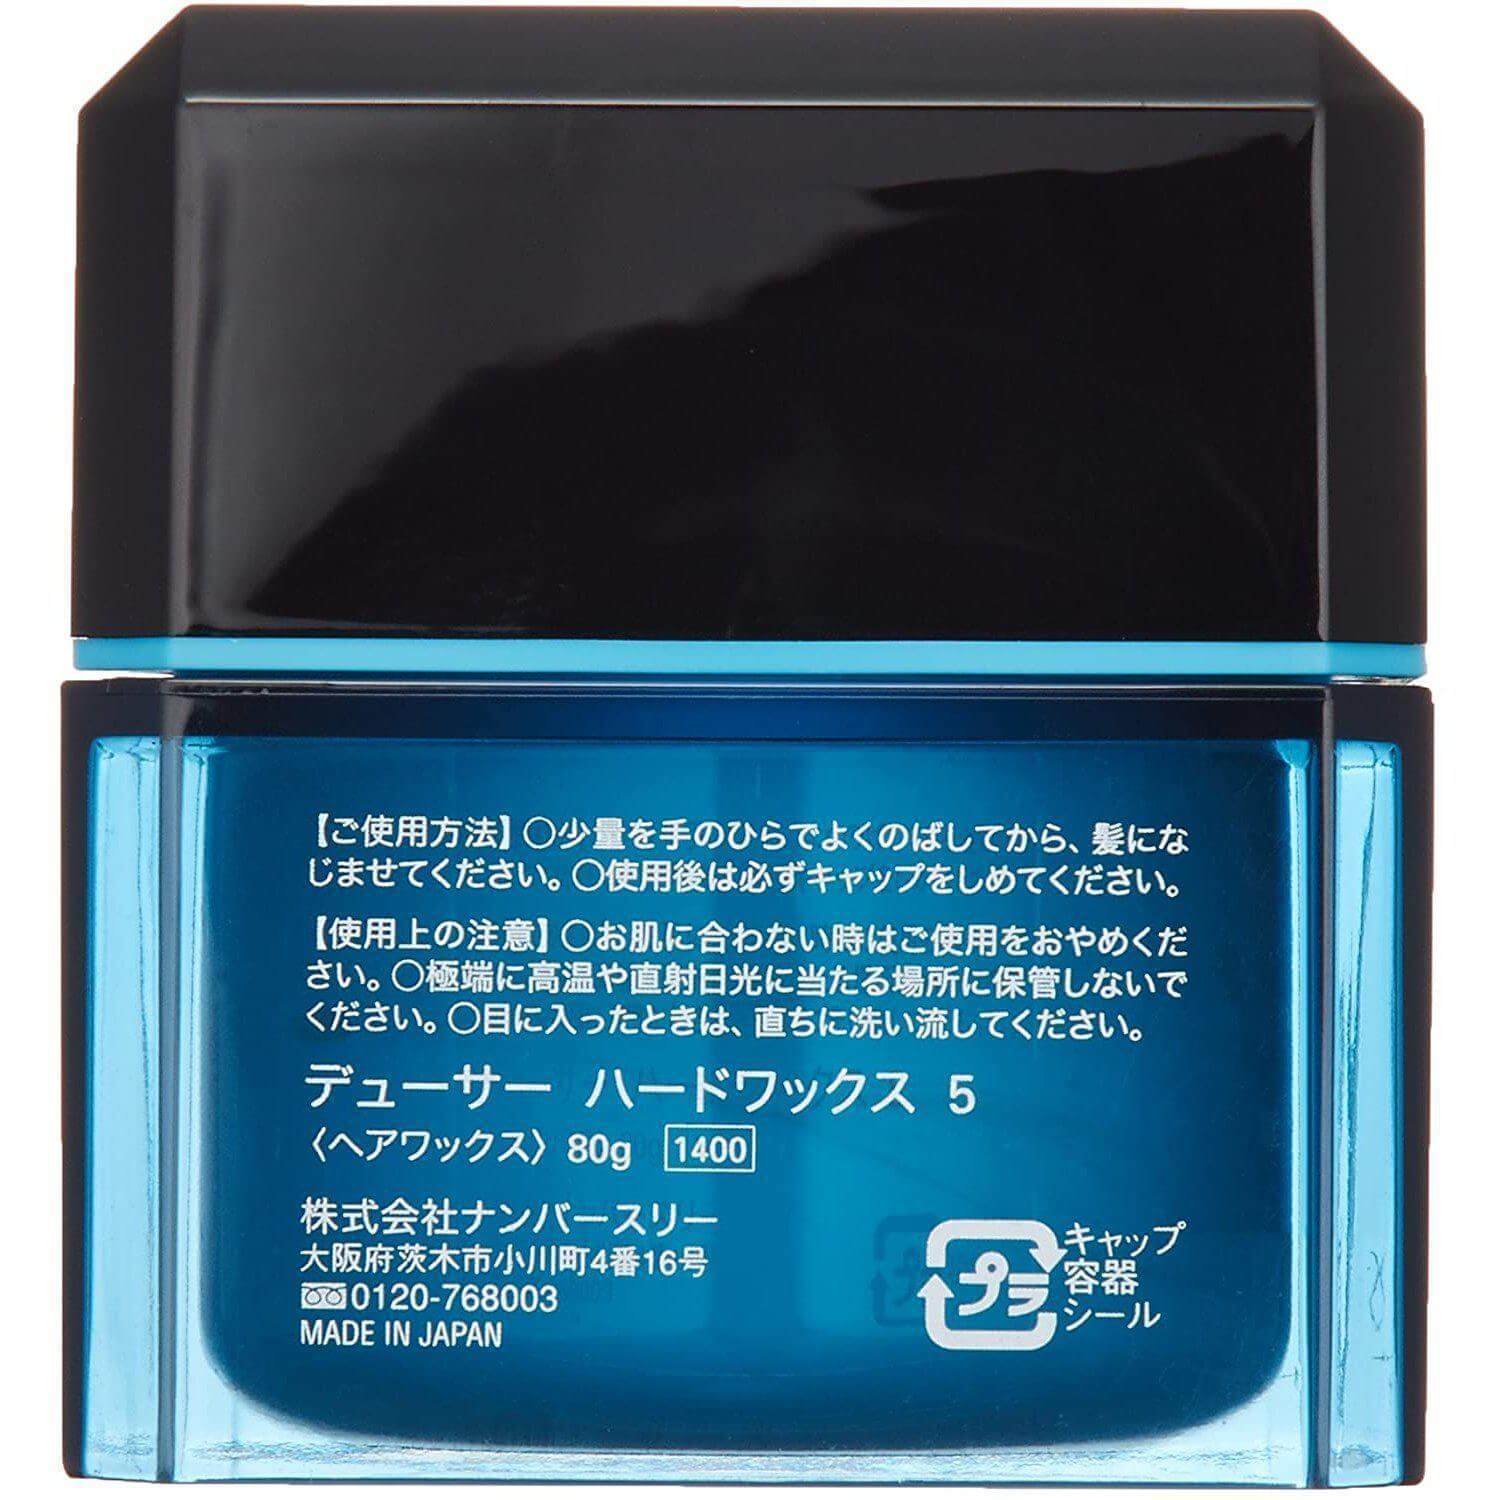 Envie Japan Color Contacts 1 Box 30 Pieces 14.0Mm Coral Teak - 0.75 No Prescription - YOYO JAPAN